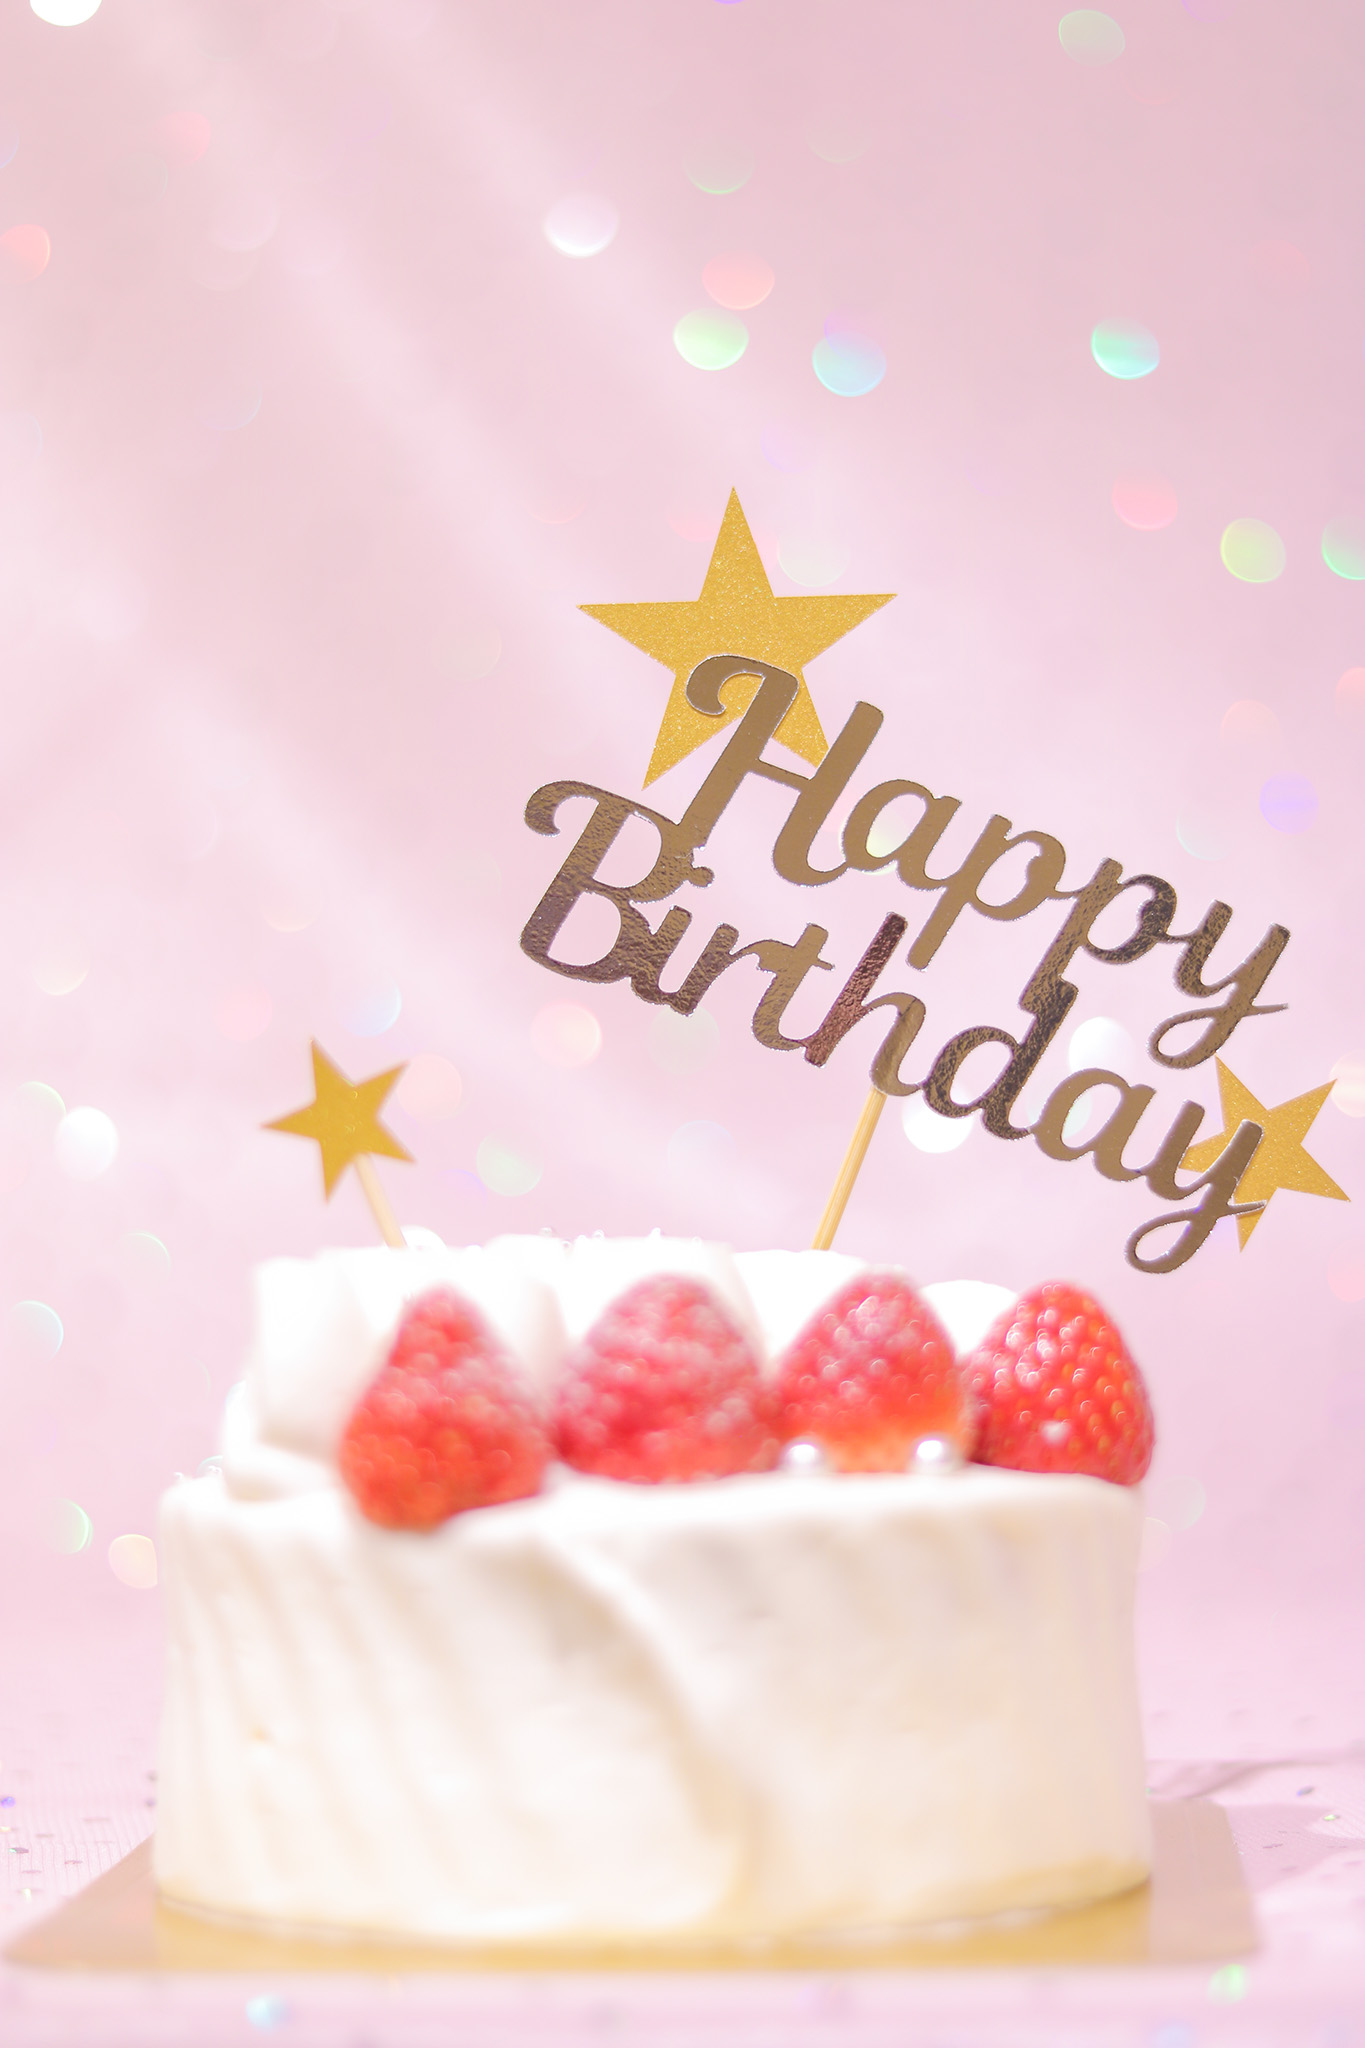 かわいい誕生日画像 豪華な誕生日ケーキと星が可愛いケーキトッパー 縦長 のフリー画像 おしゃれなフリー写真素材 Girly Drop